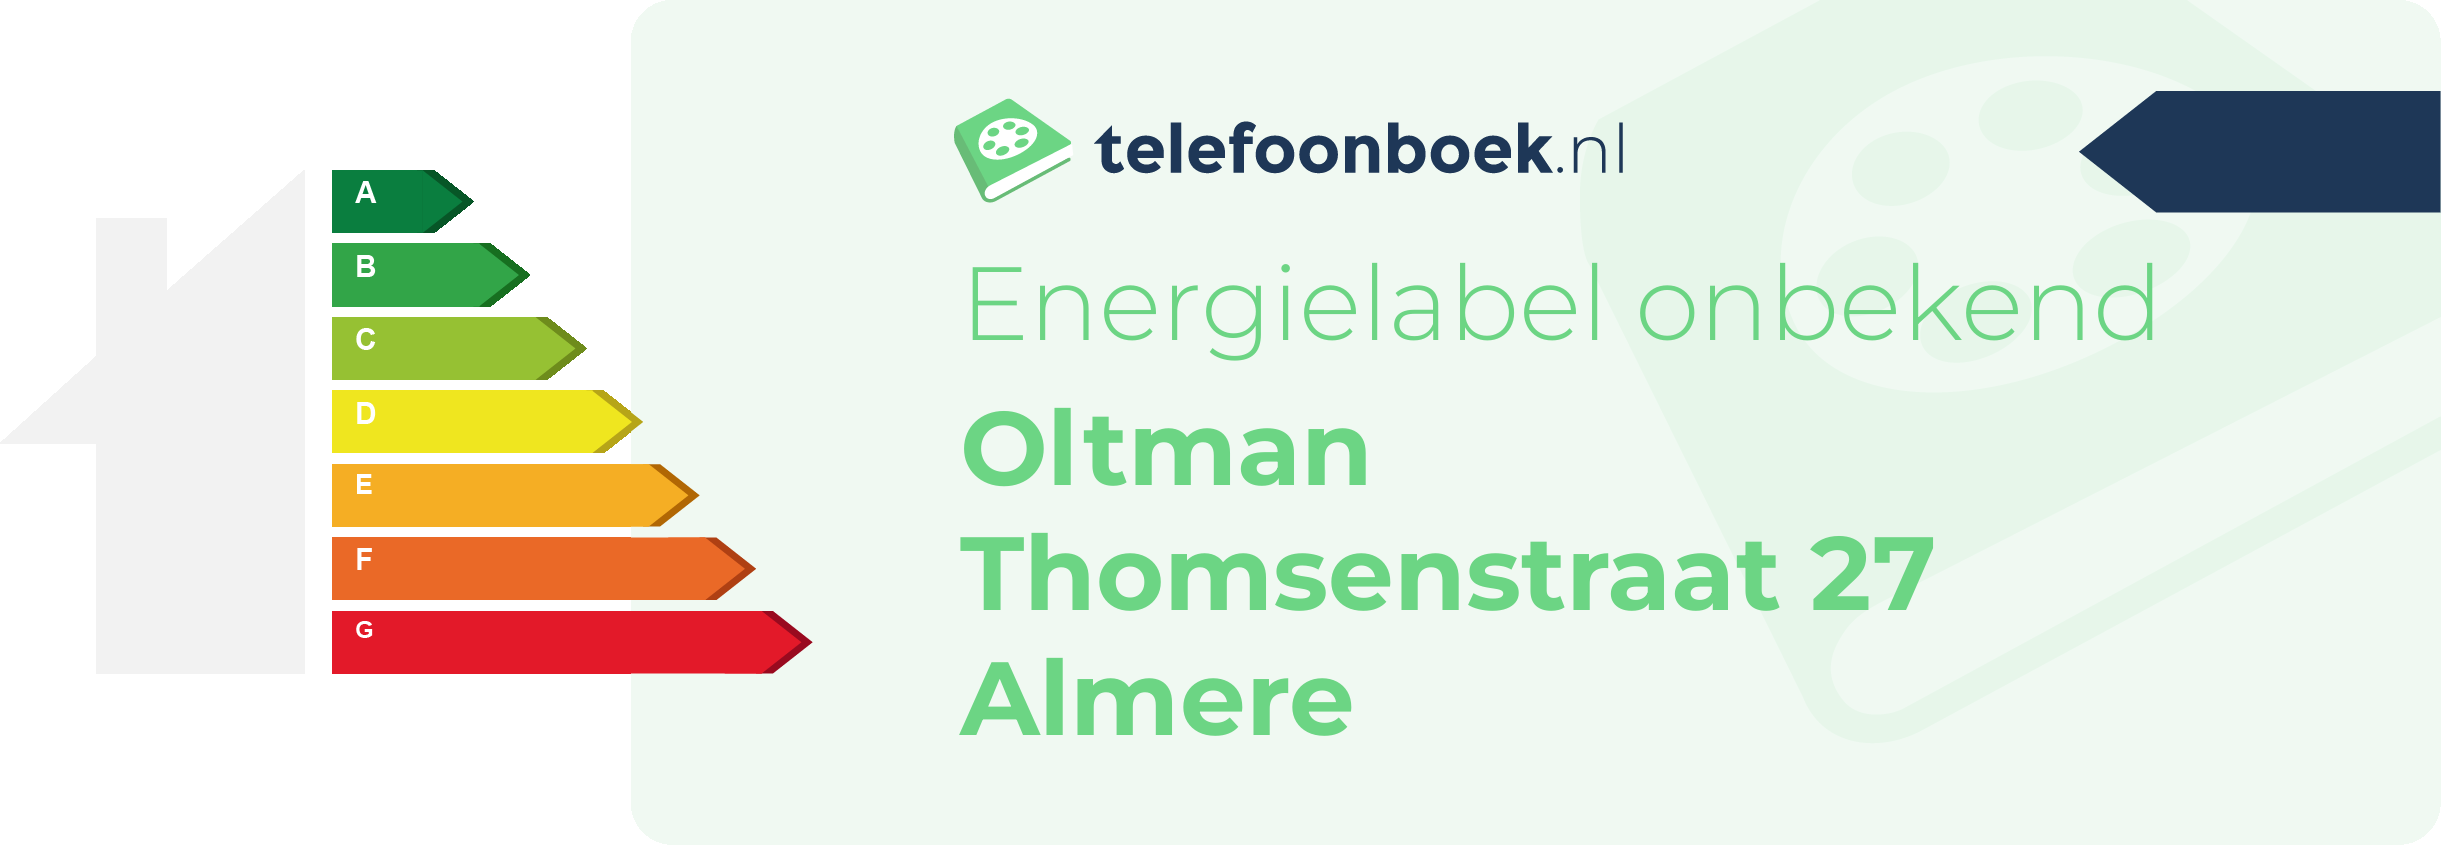 Energielabel Oltman Thomsenstraat 27 Almere